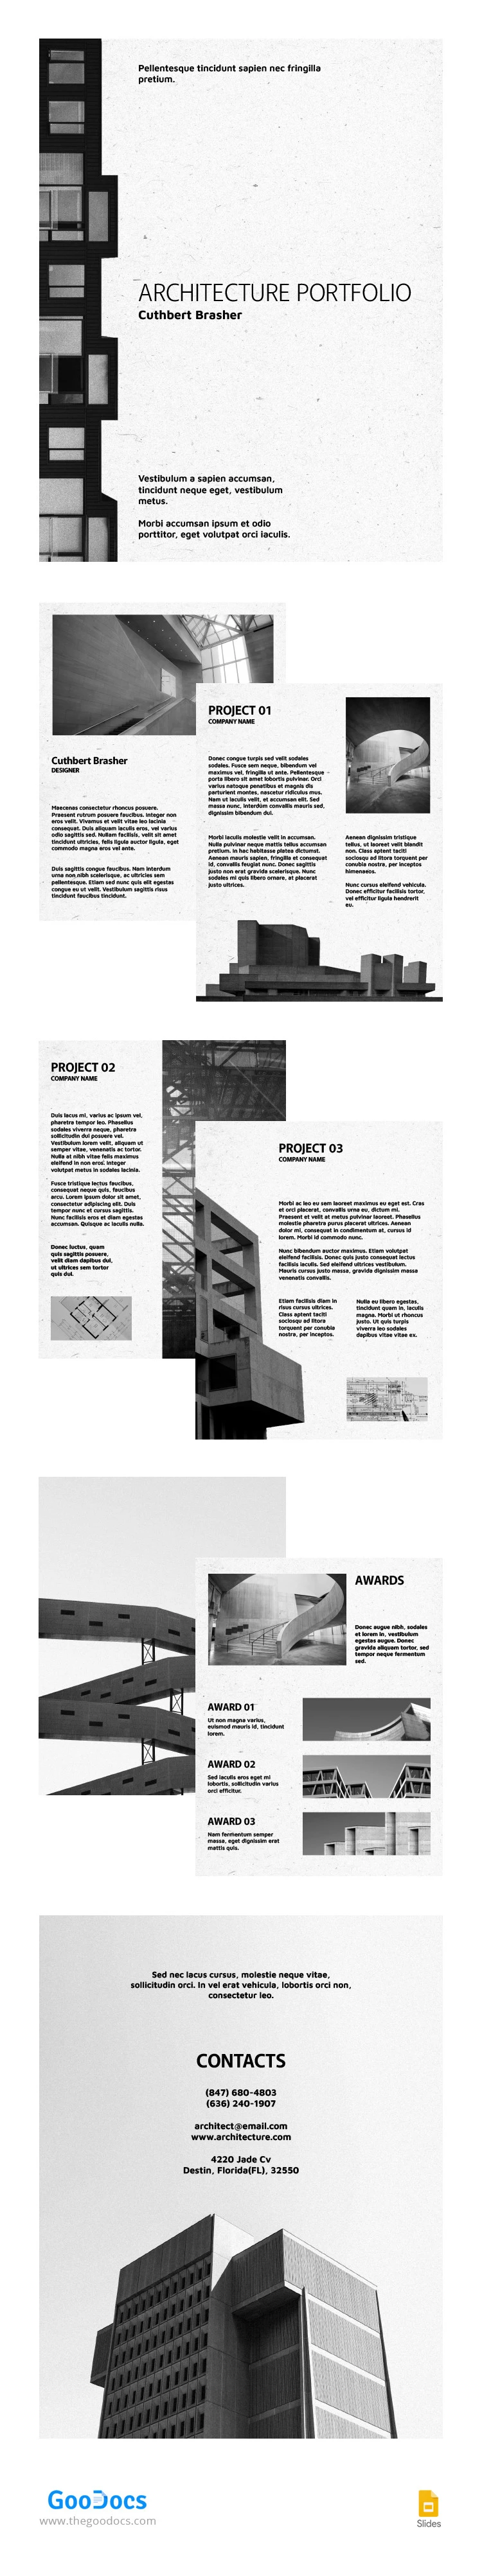 Portfolio di architettura in bianco e nero - free Google Docs Template - 10065449